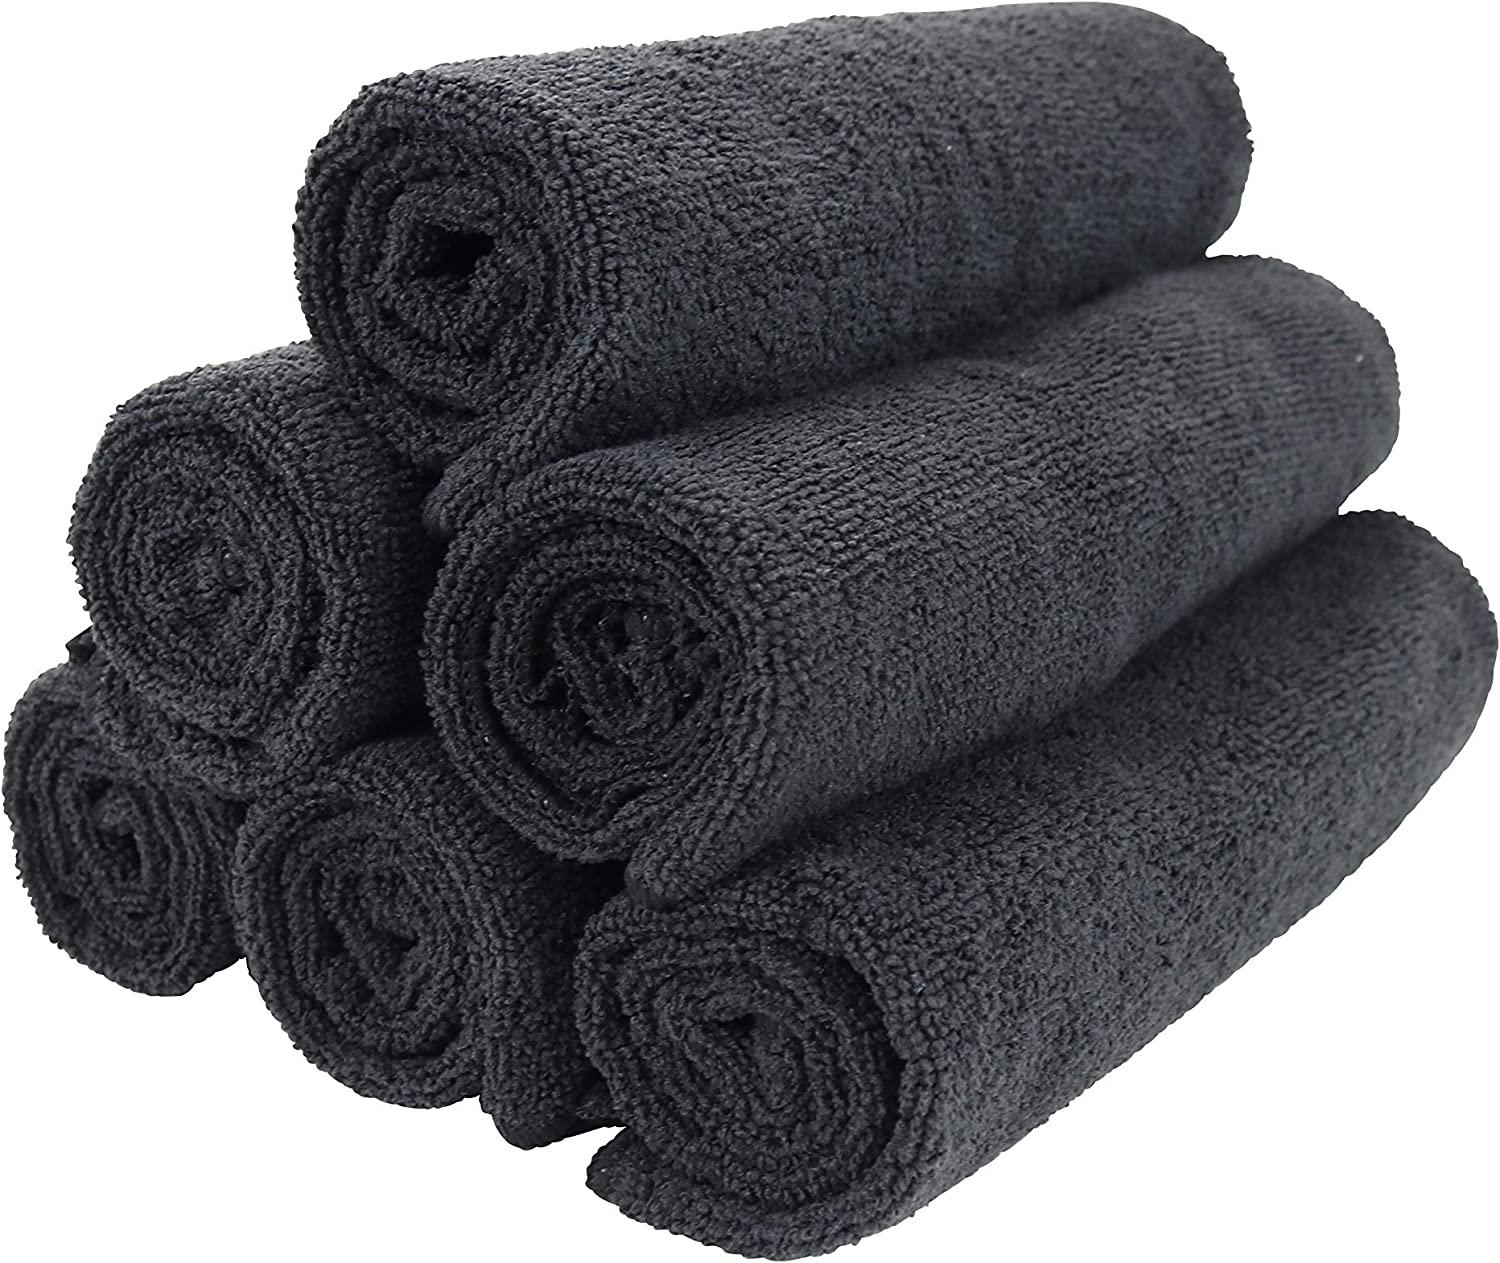 Salon Bleach Resistant Towels